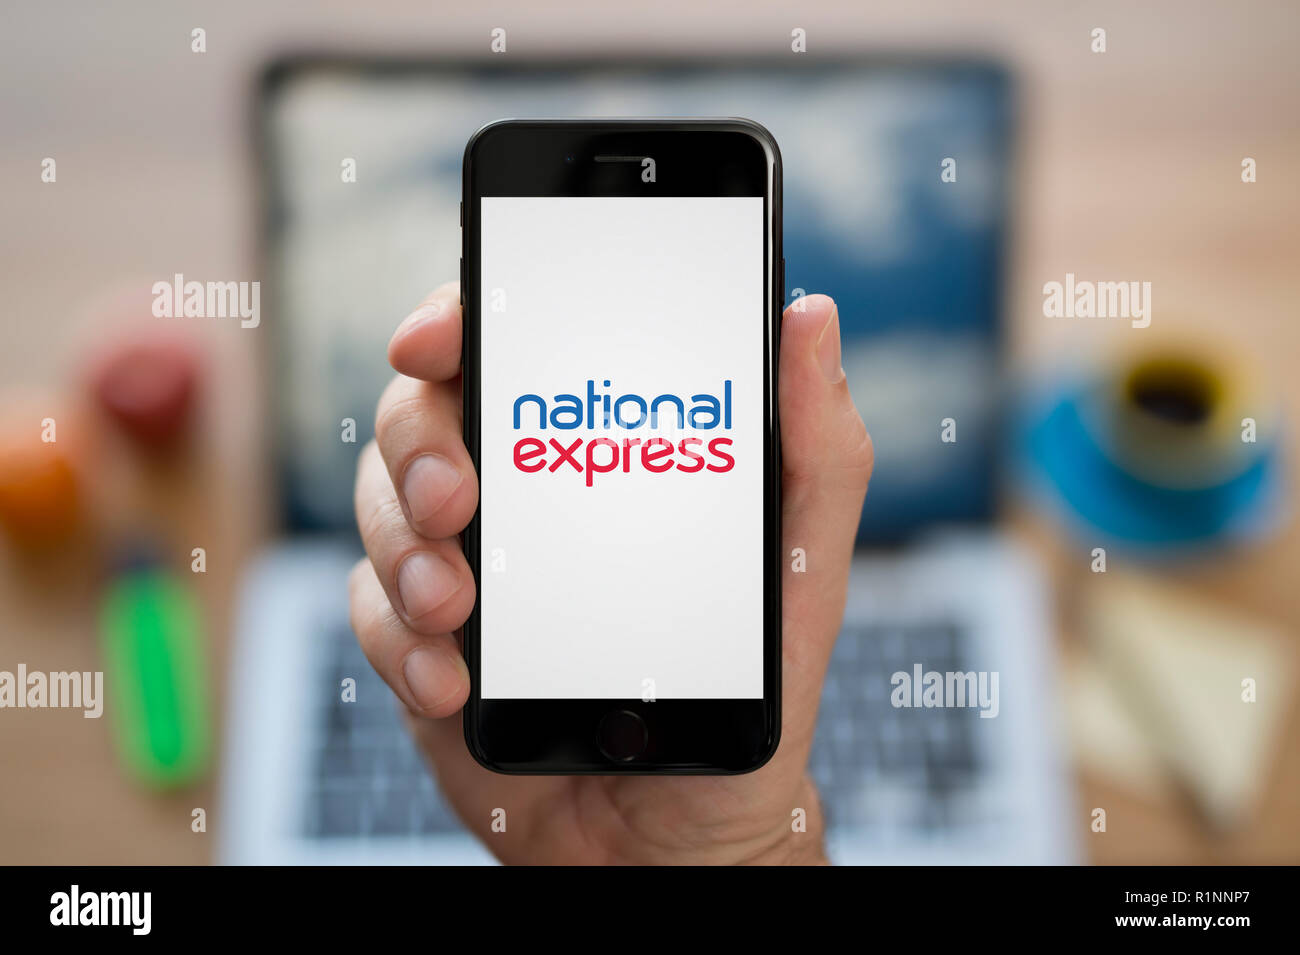 Ein Mann schaut auf seinem iPhone die zeigt die National Express logo, während saß an seinem Computer Schreibtisch (nur redaktionelle Nutzung). Stockfoto